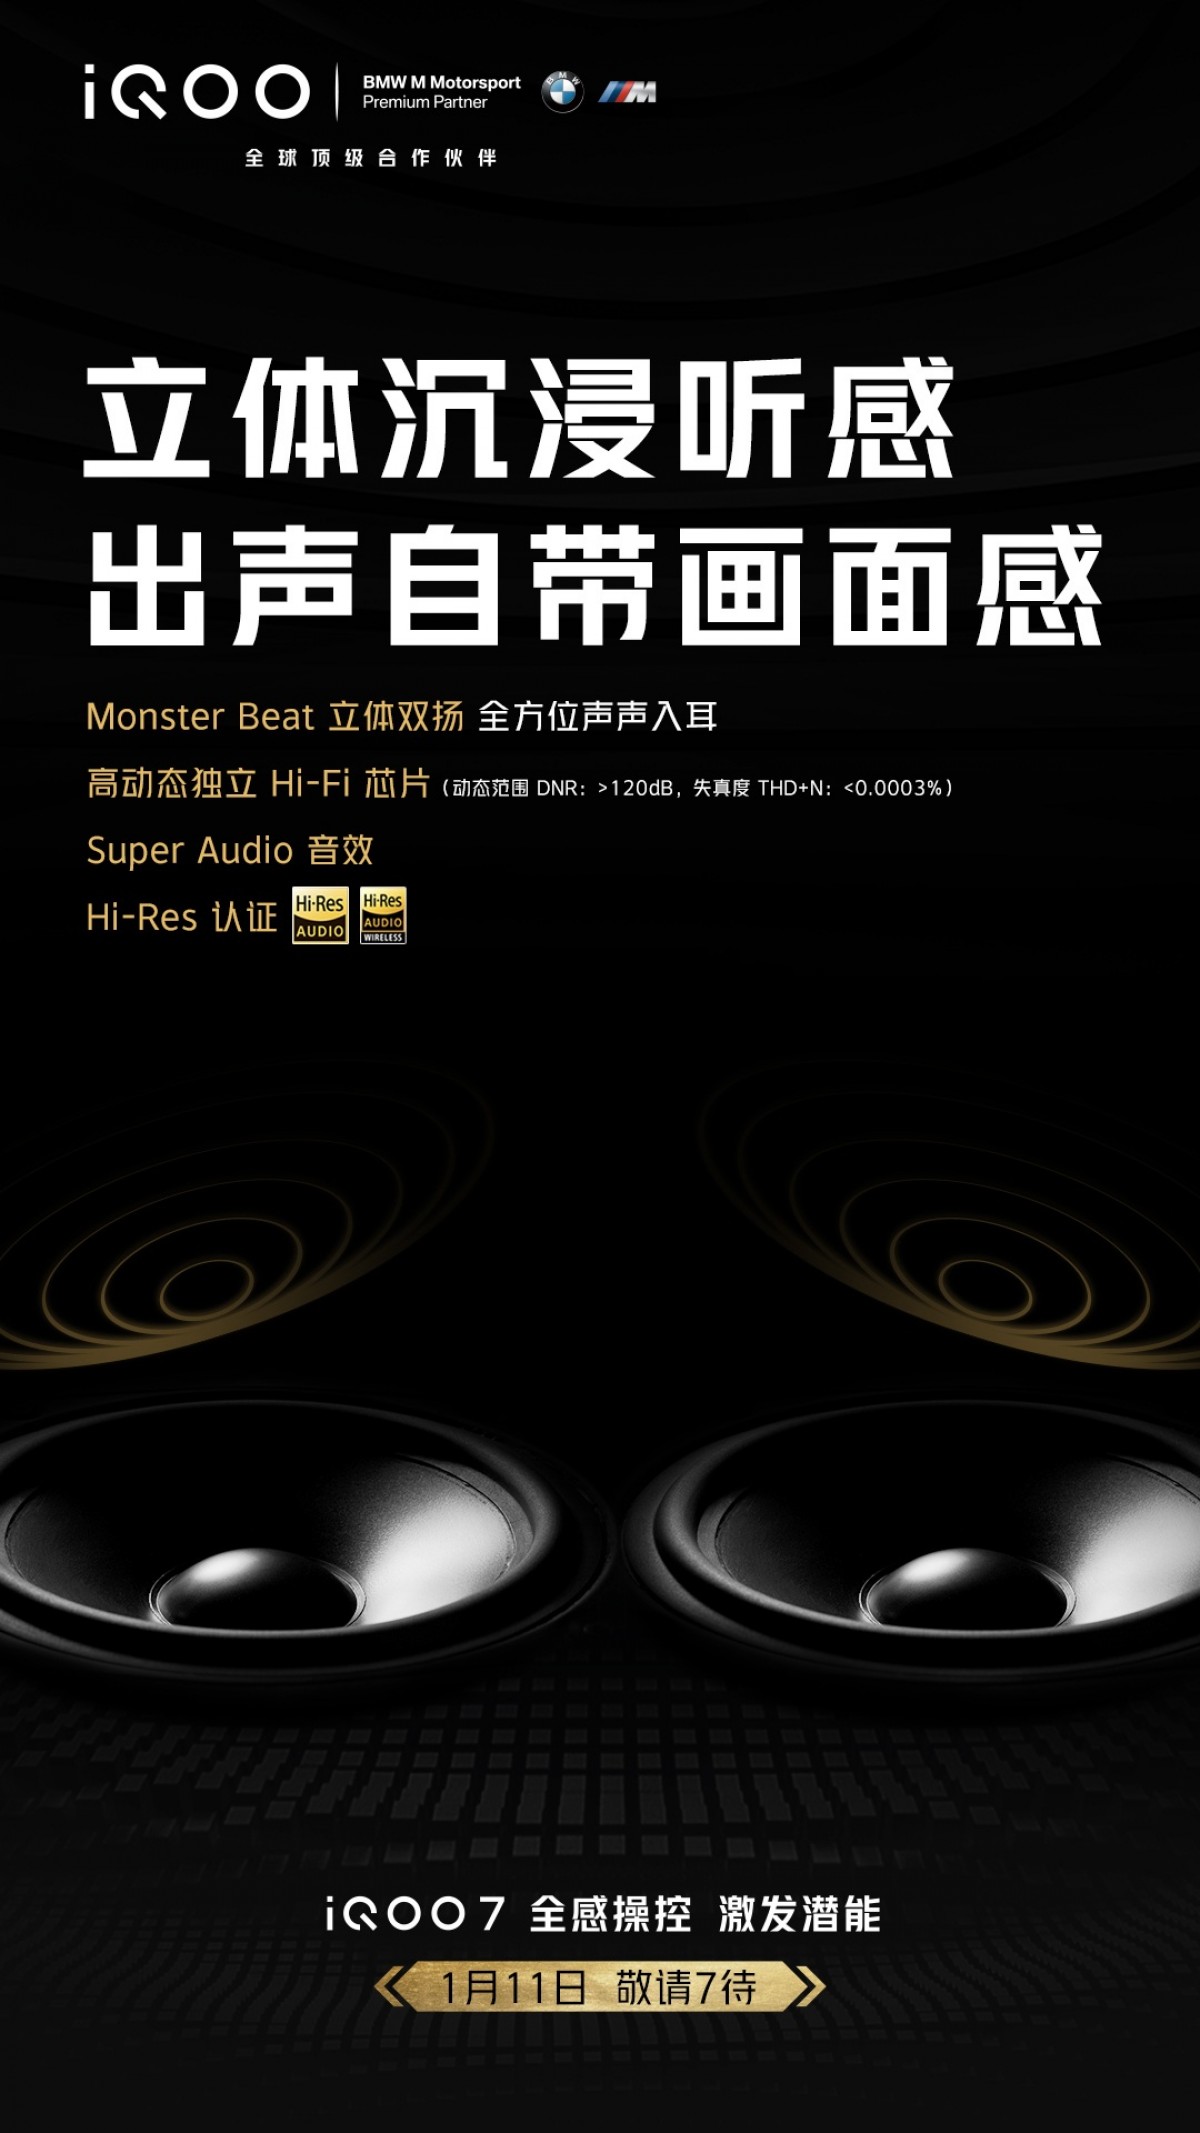  Шесть телефонов vivo iQOO начинают получать бета-версию Origin OS, iQOO 7 - с динамиками Monster Beat 